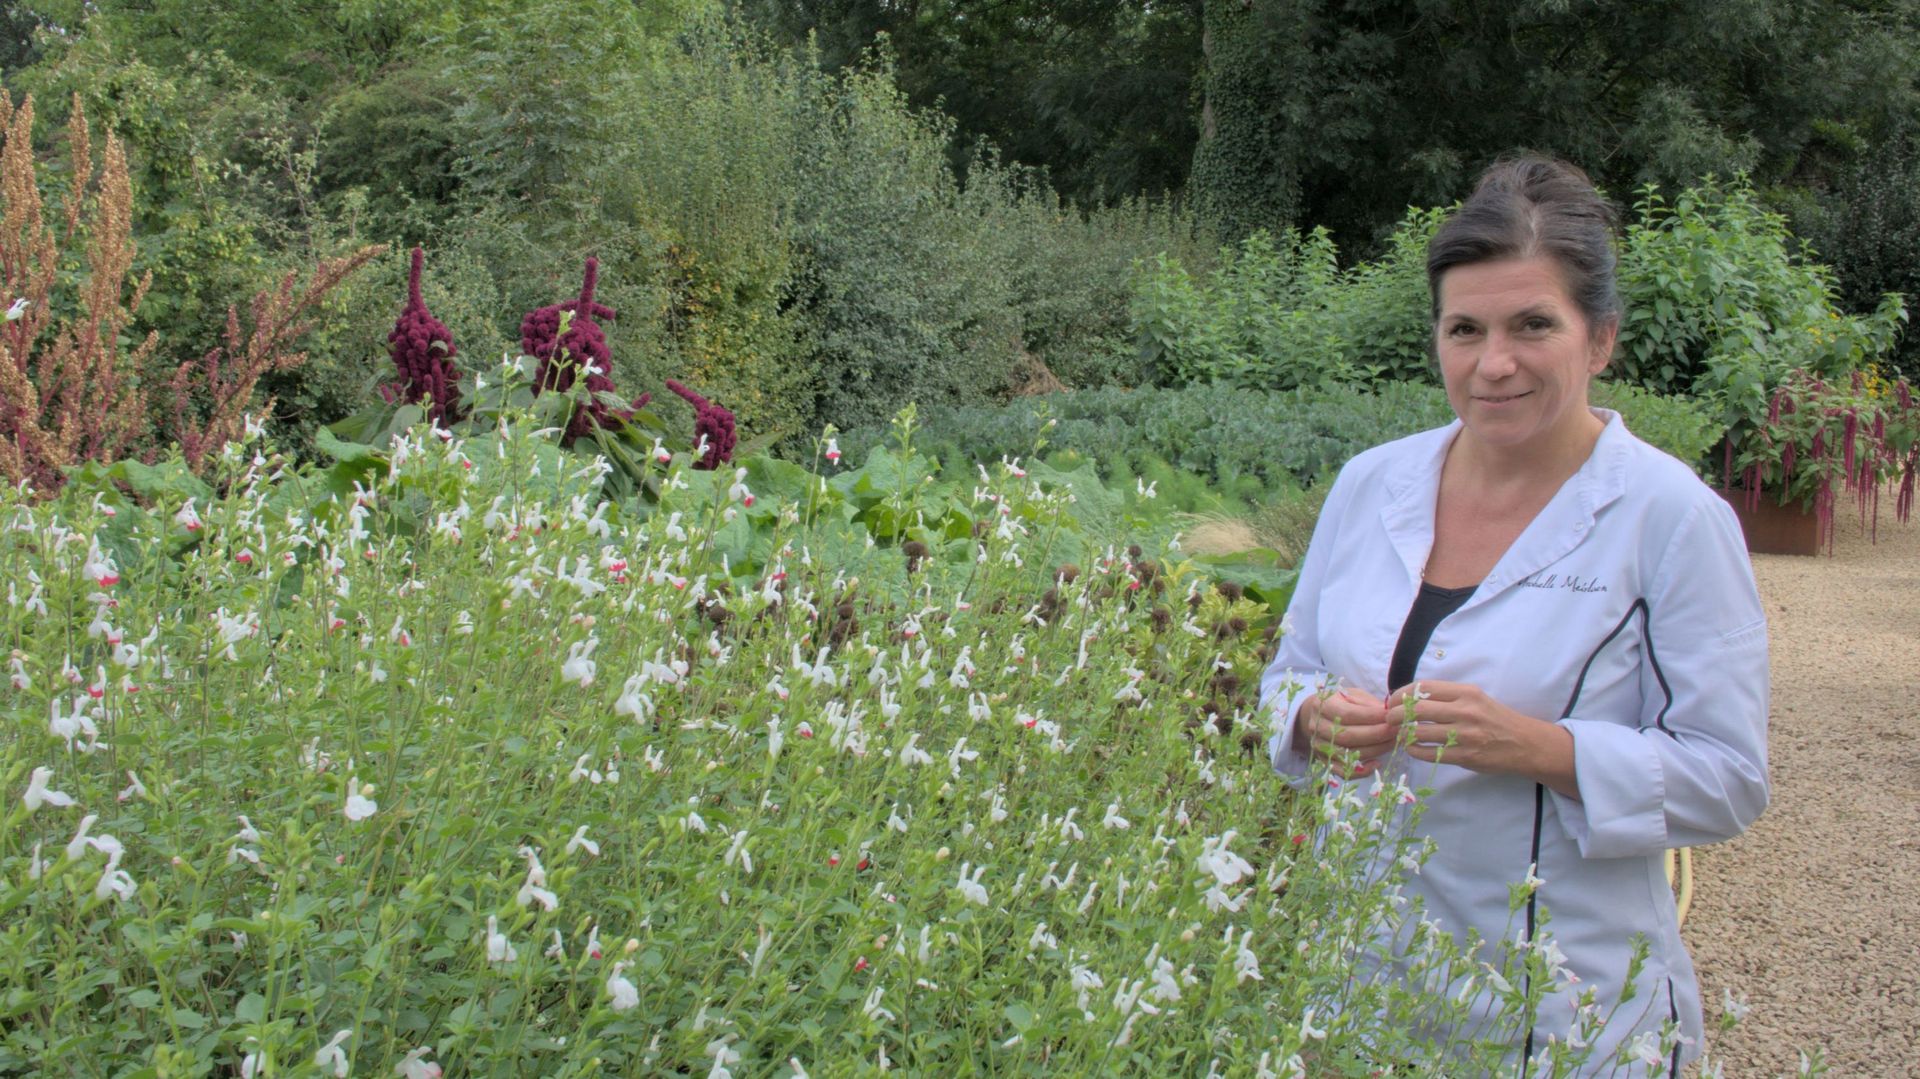 Arabelle Meirlaen, cheffe étoilée à Marchin, ouvrira son jardin le samedi 24 juin. Le grand potager fournit avec une fraîcheur exceptionnelle nombre de légumes et plantes aromatiques pour sa démarche culinaire en lien avec la terre.